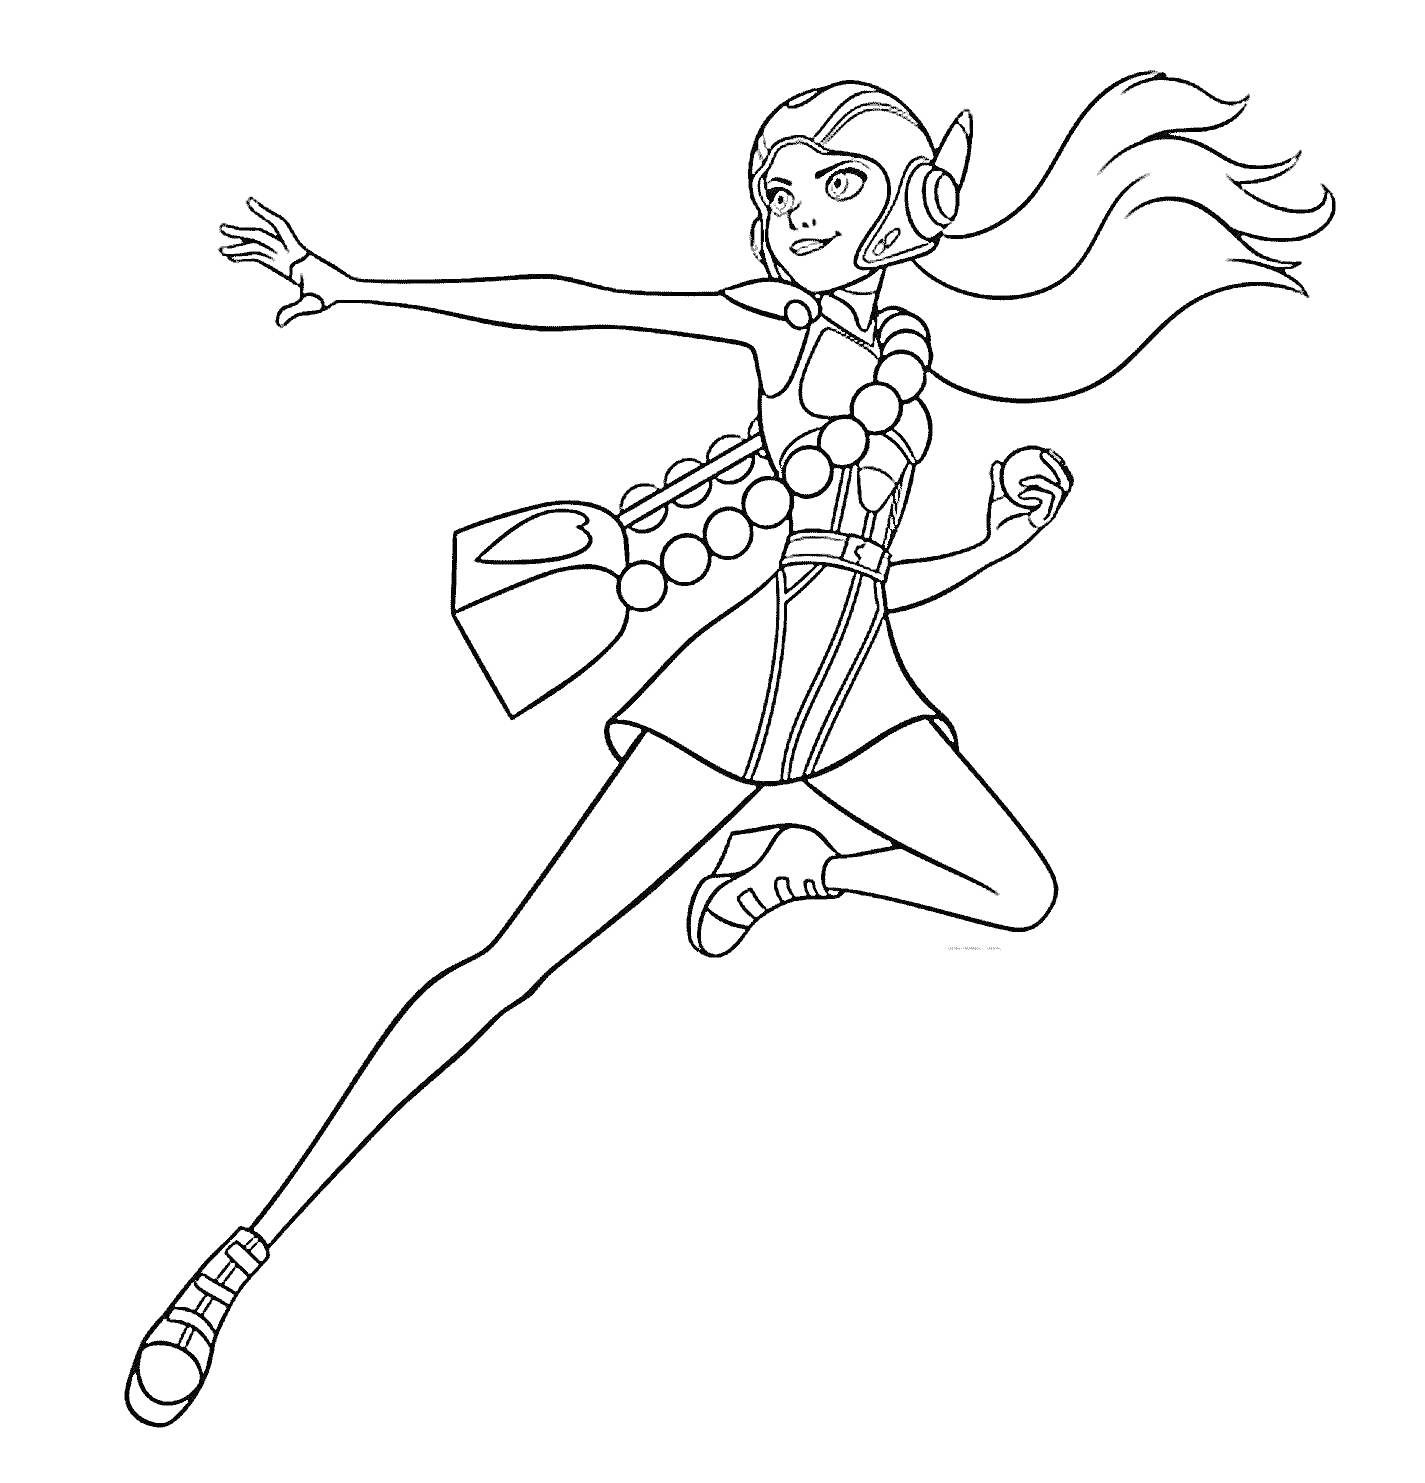 Раскраска Девушка в костюме героя с длинными волосами и наушниками, держащая мяч, в прыжке